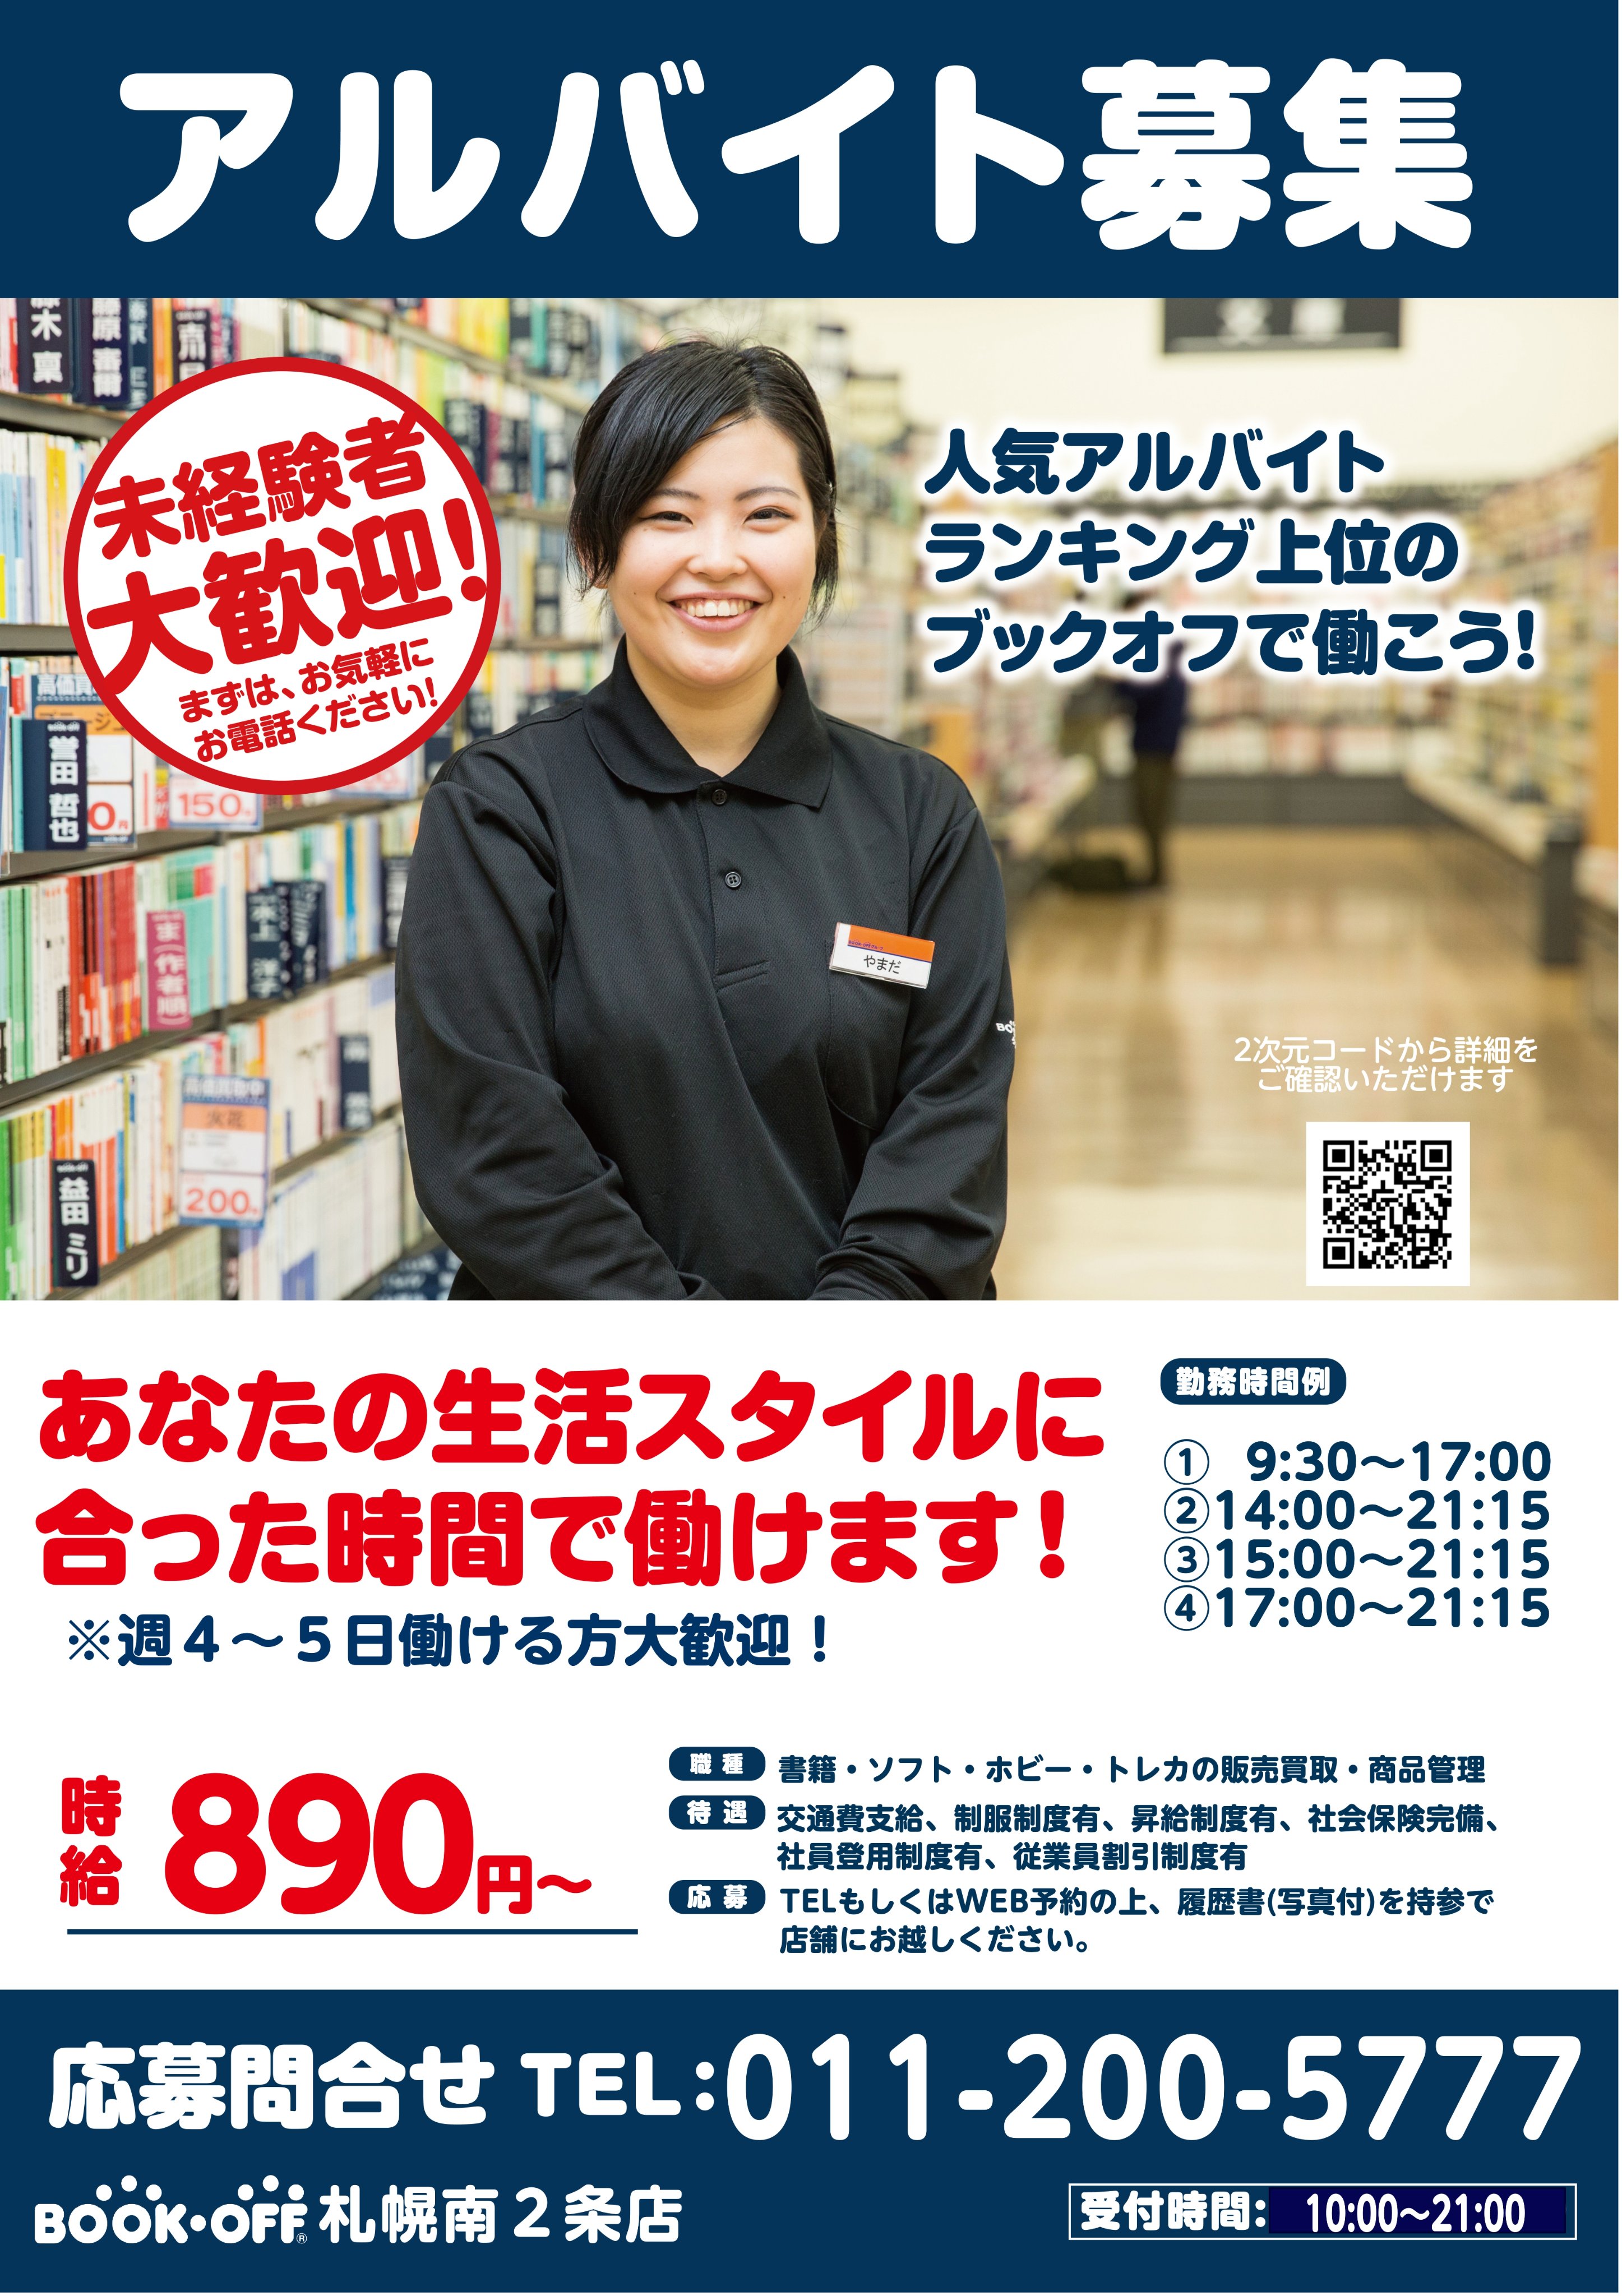 ブックオフ札幌南2条店 Bookoff374 Twitter